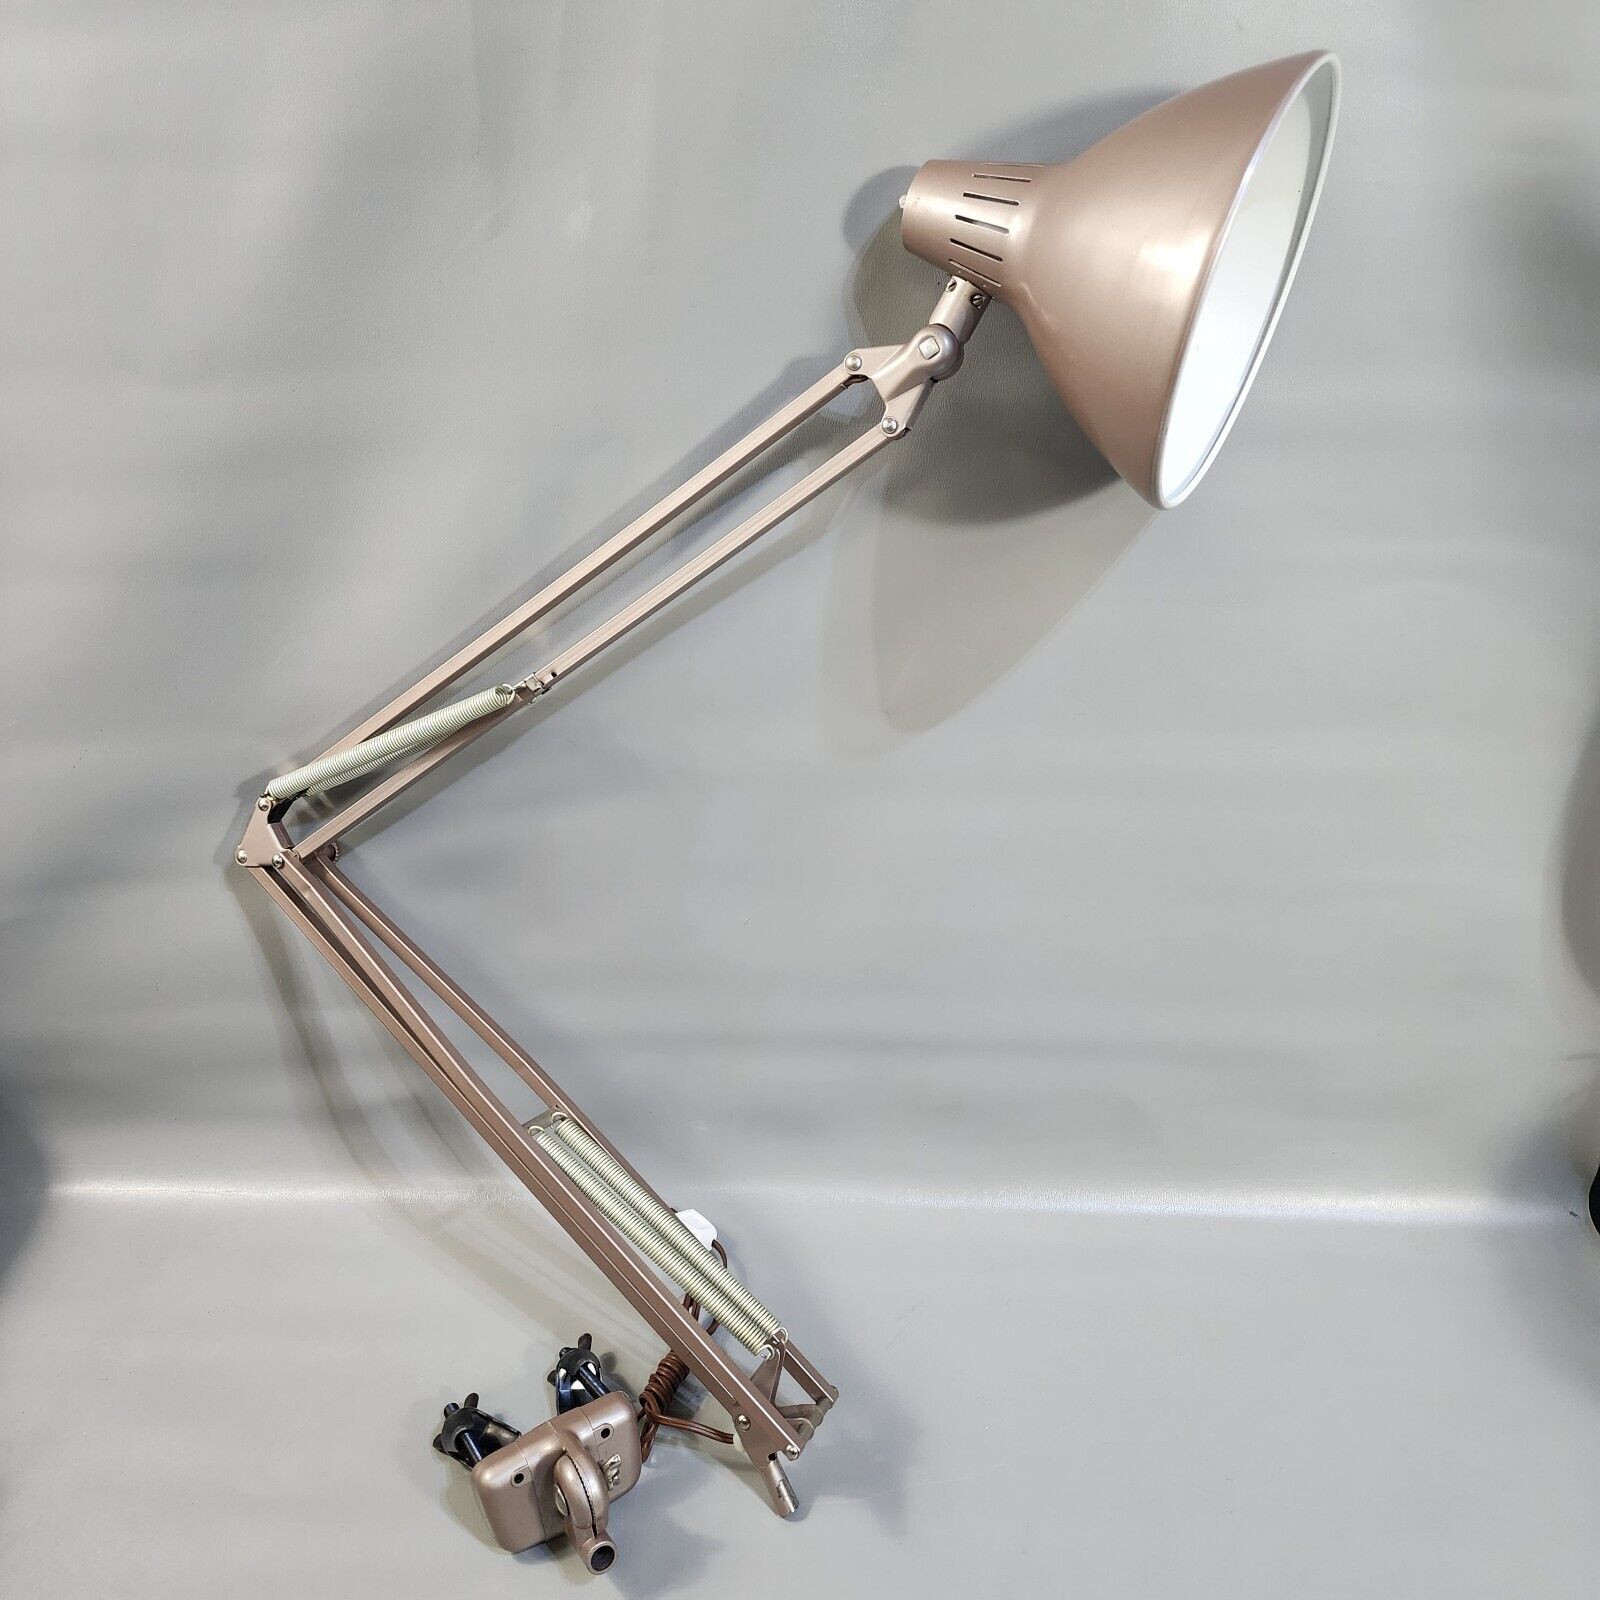 Vintage Articulating Desk Lamp Adjustable Drafting Work Light Clamp On Base